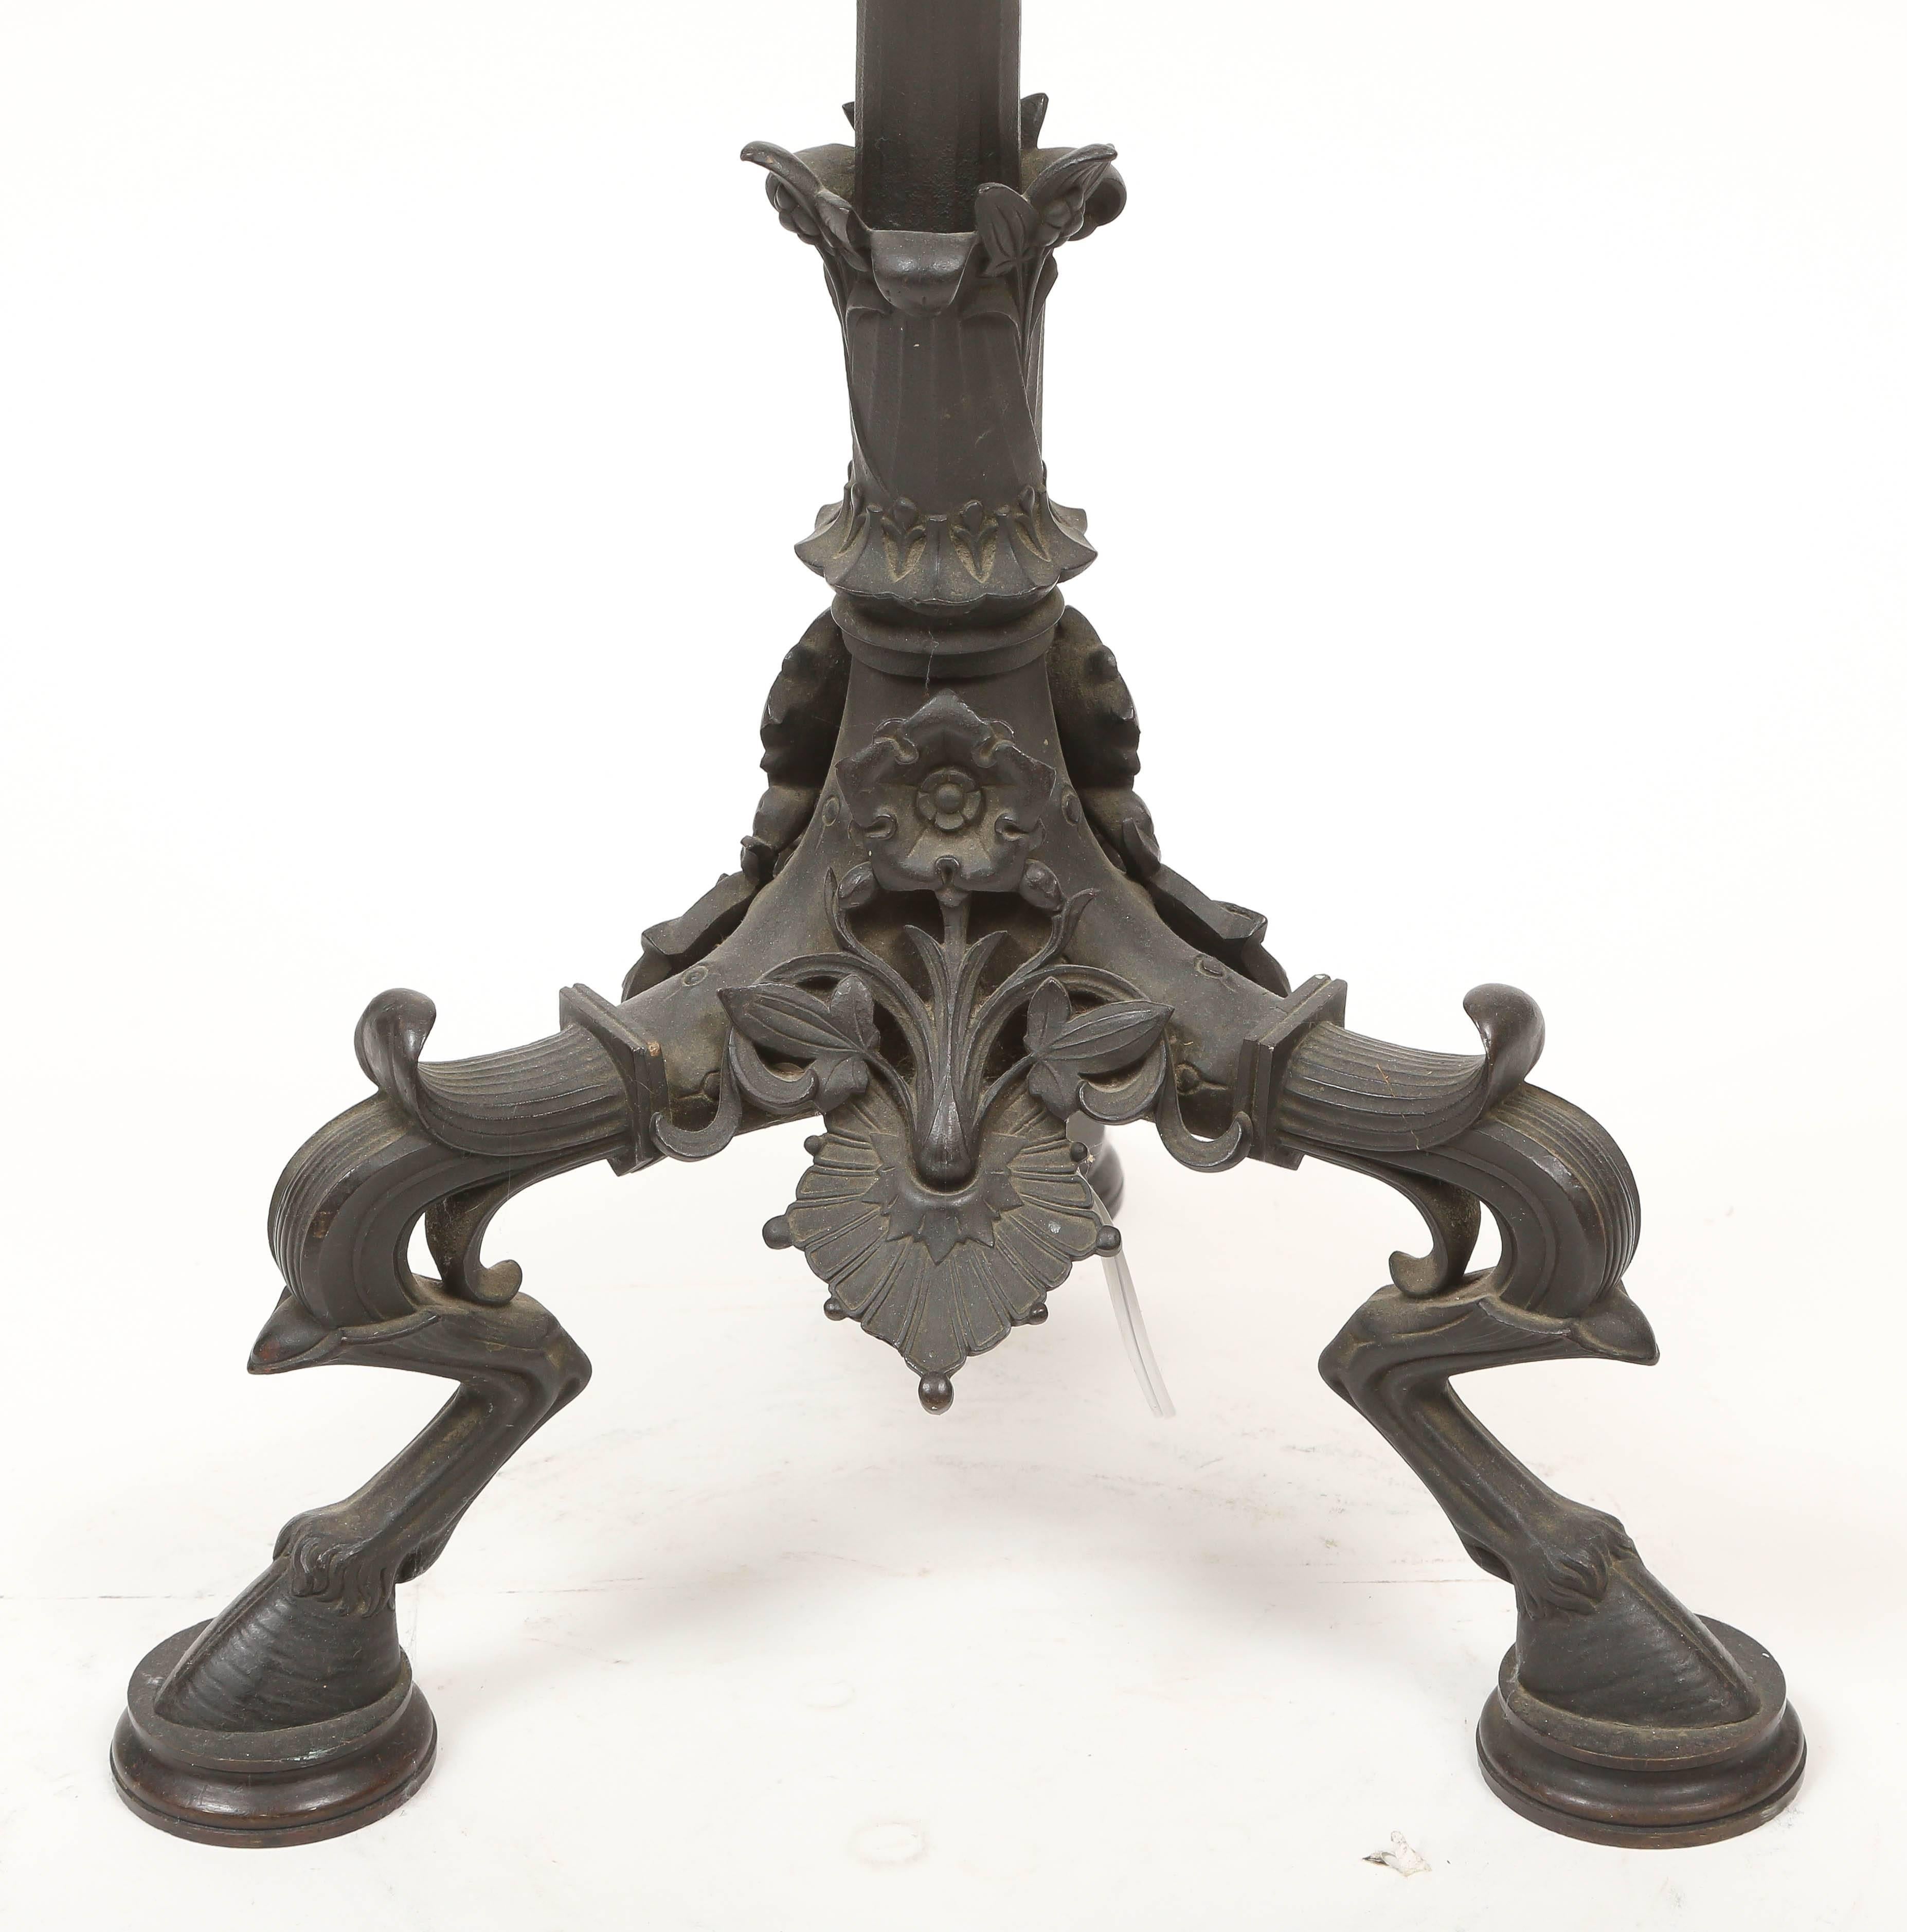 Seltene dreibeinige Stehlampe im pompejianischen Stil, die der Gießerei Caldwell & Company zugeschrieben wird. Patinierte Bronze in Grünspanoptik. Elektrifiziert mit zwei Steckdosen.